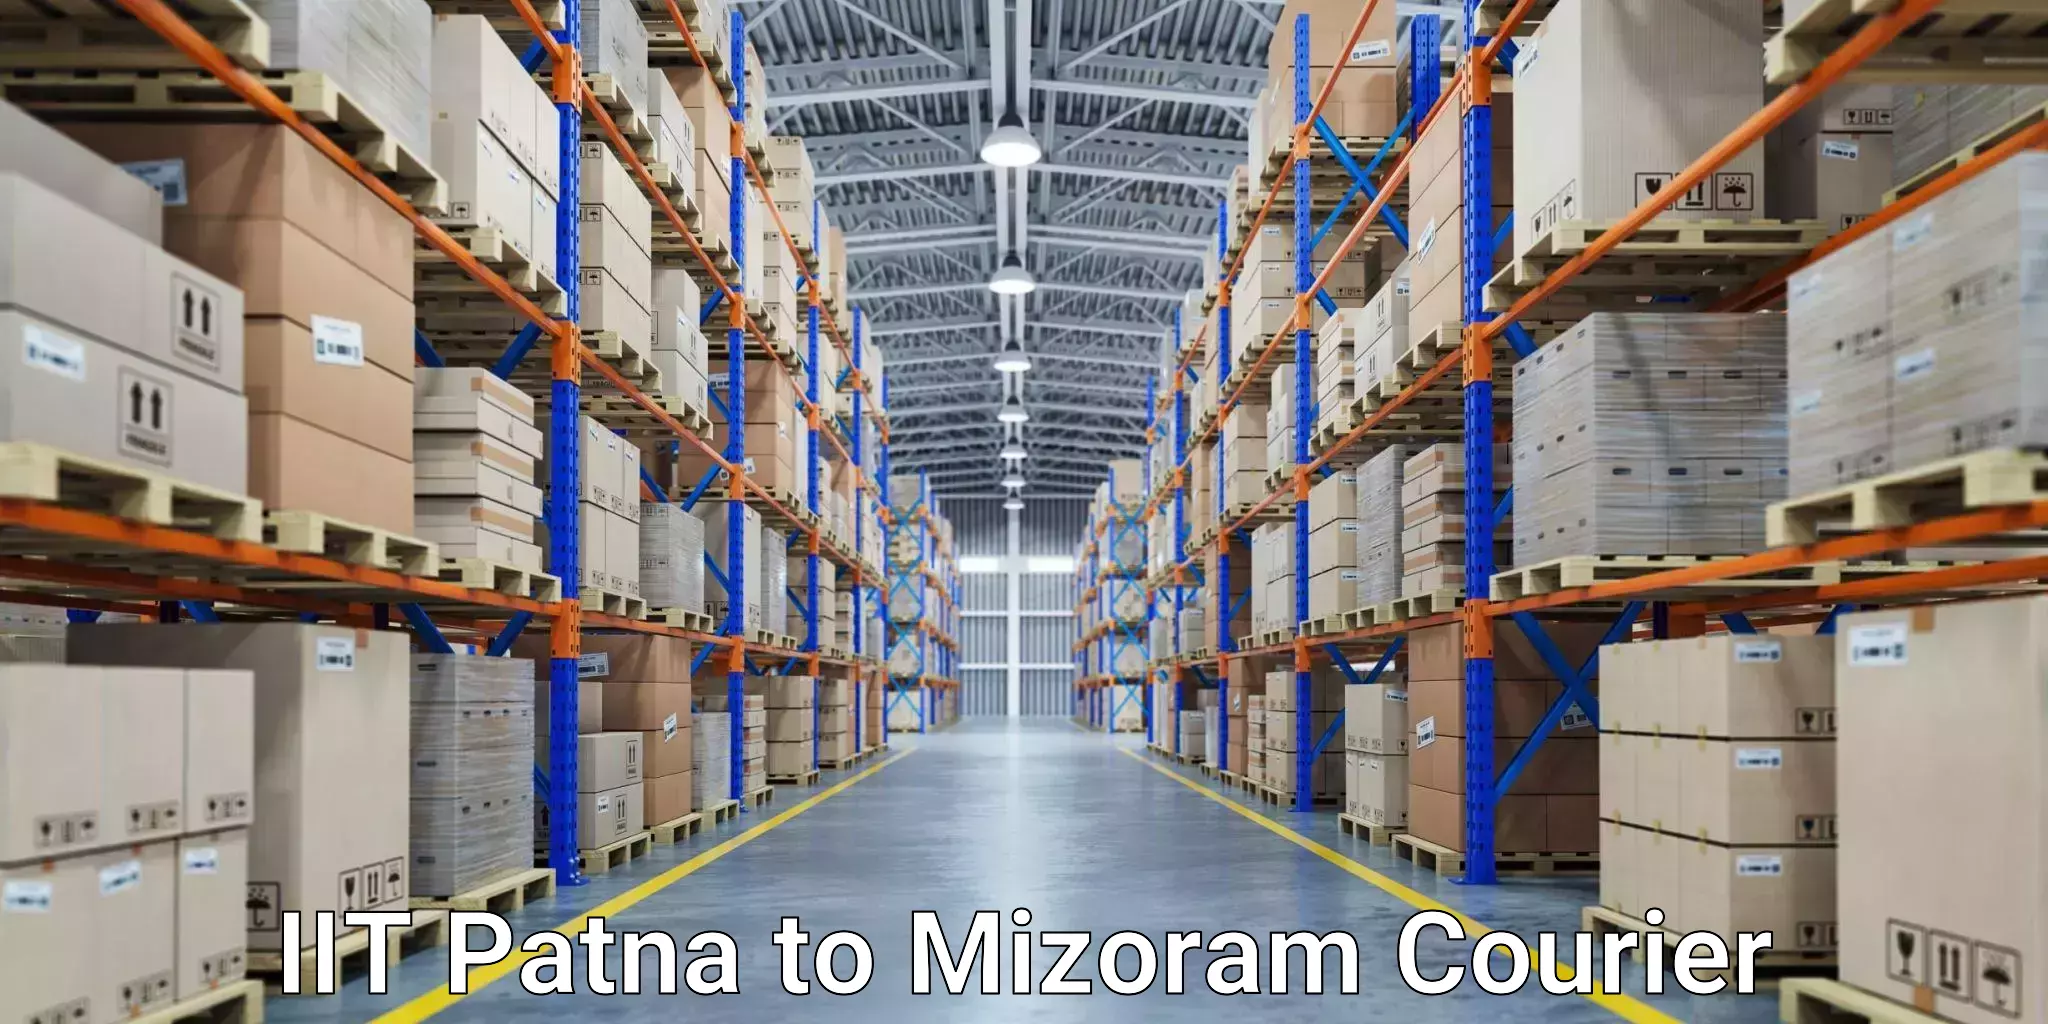 Cost-effective courier solutions IIT Patna to Mizoram